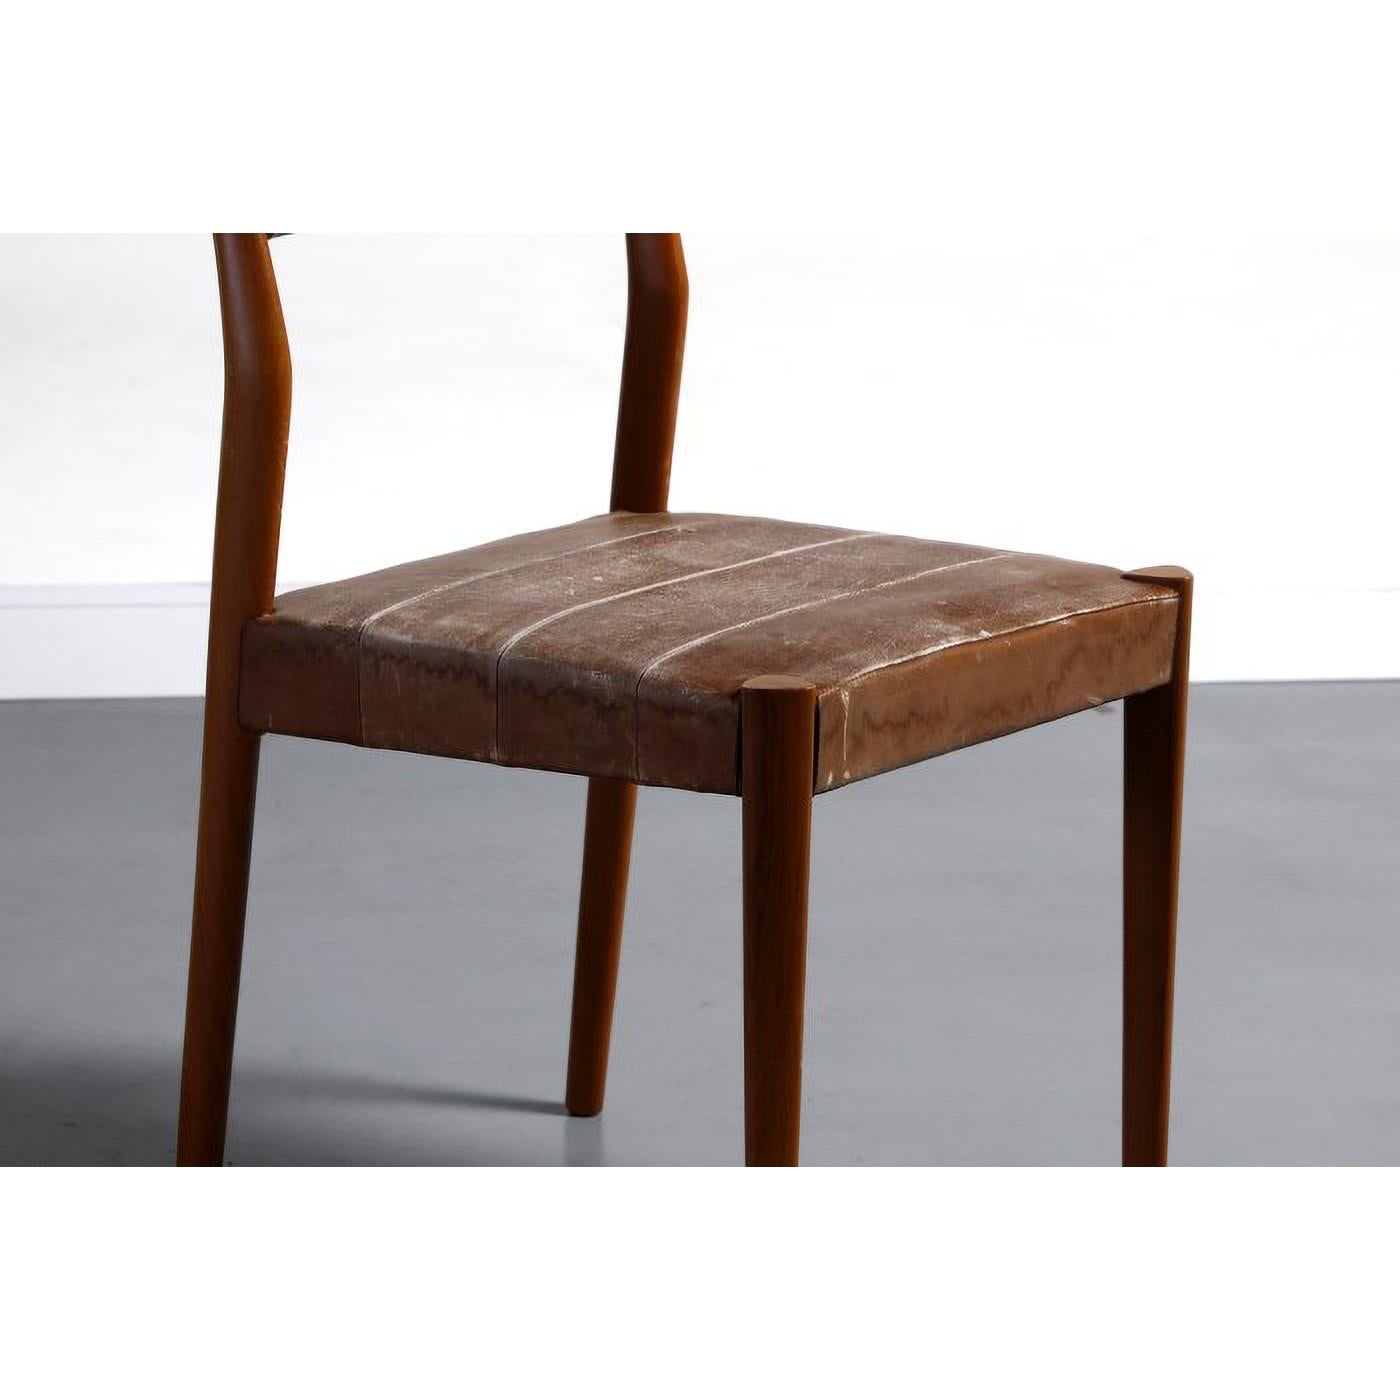 4 Stühle von Moller Niels Leder von Moller Niels aus der Mollers Mobel Fabrik, Dänemark 60er Jahre (Moderne der Mitte des Jahrhunderts)